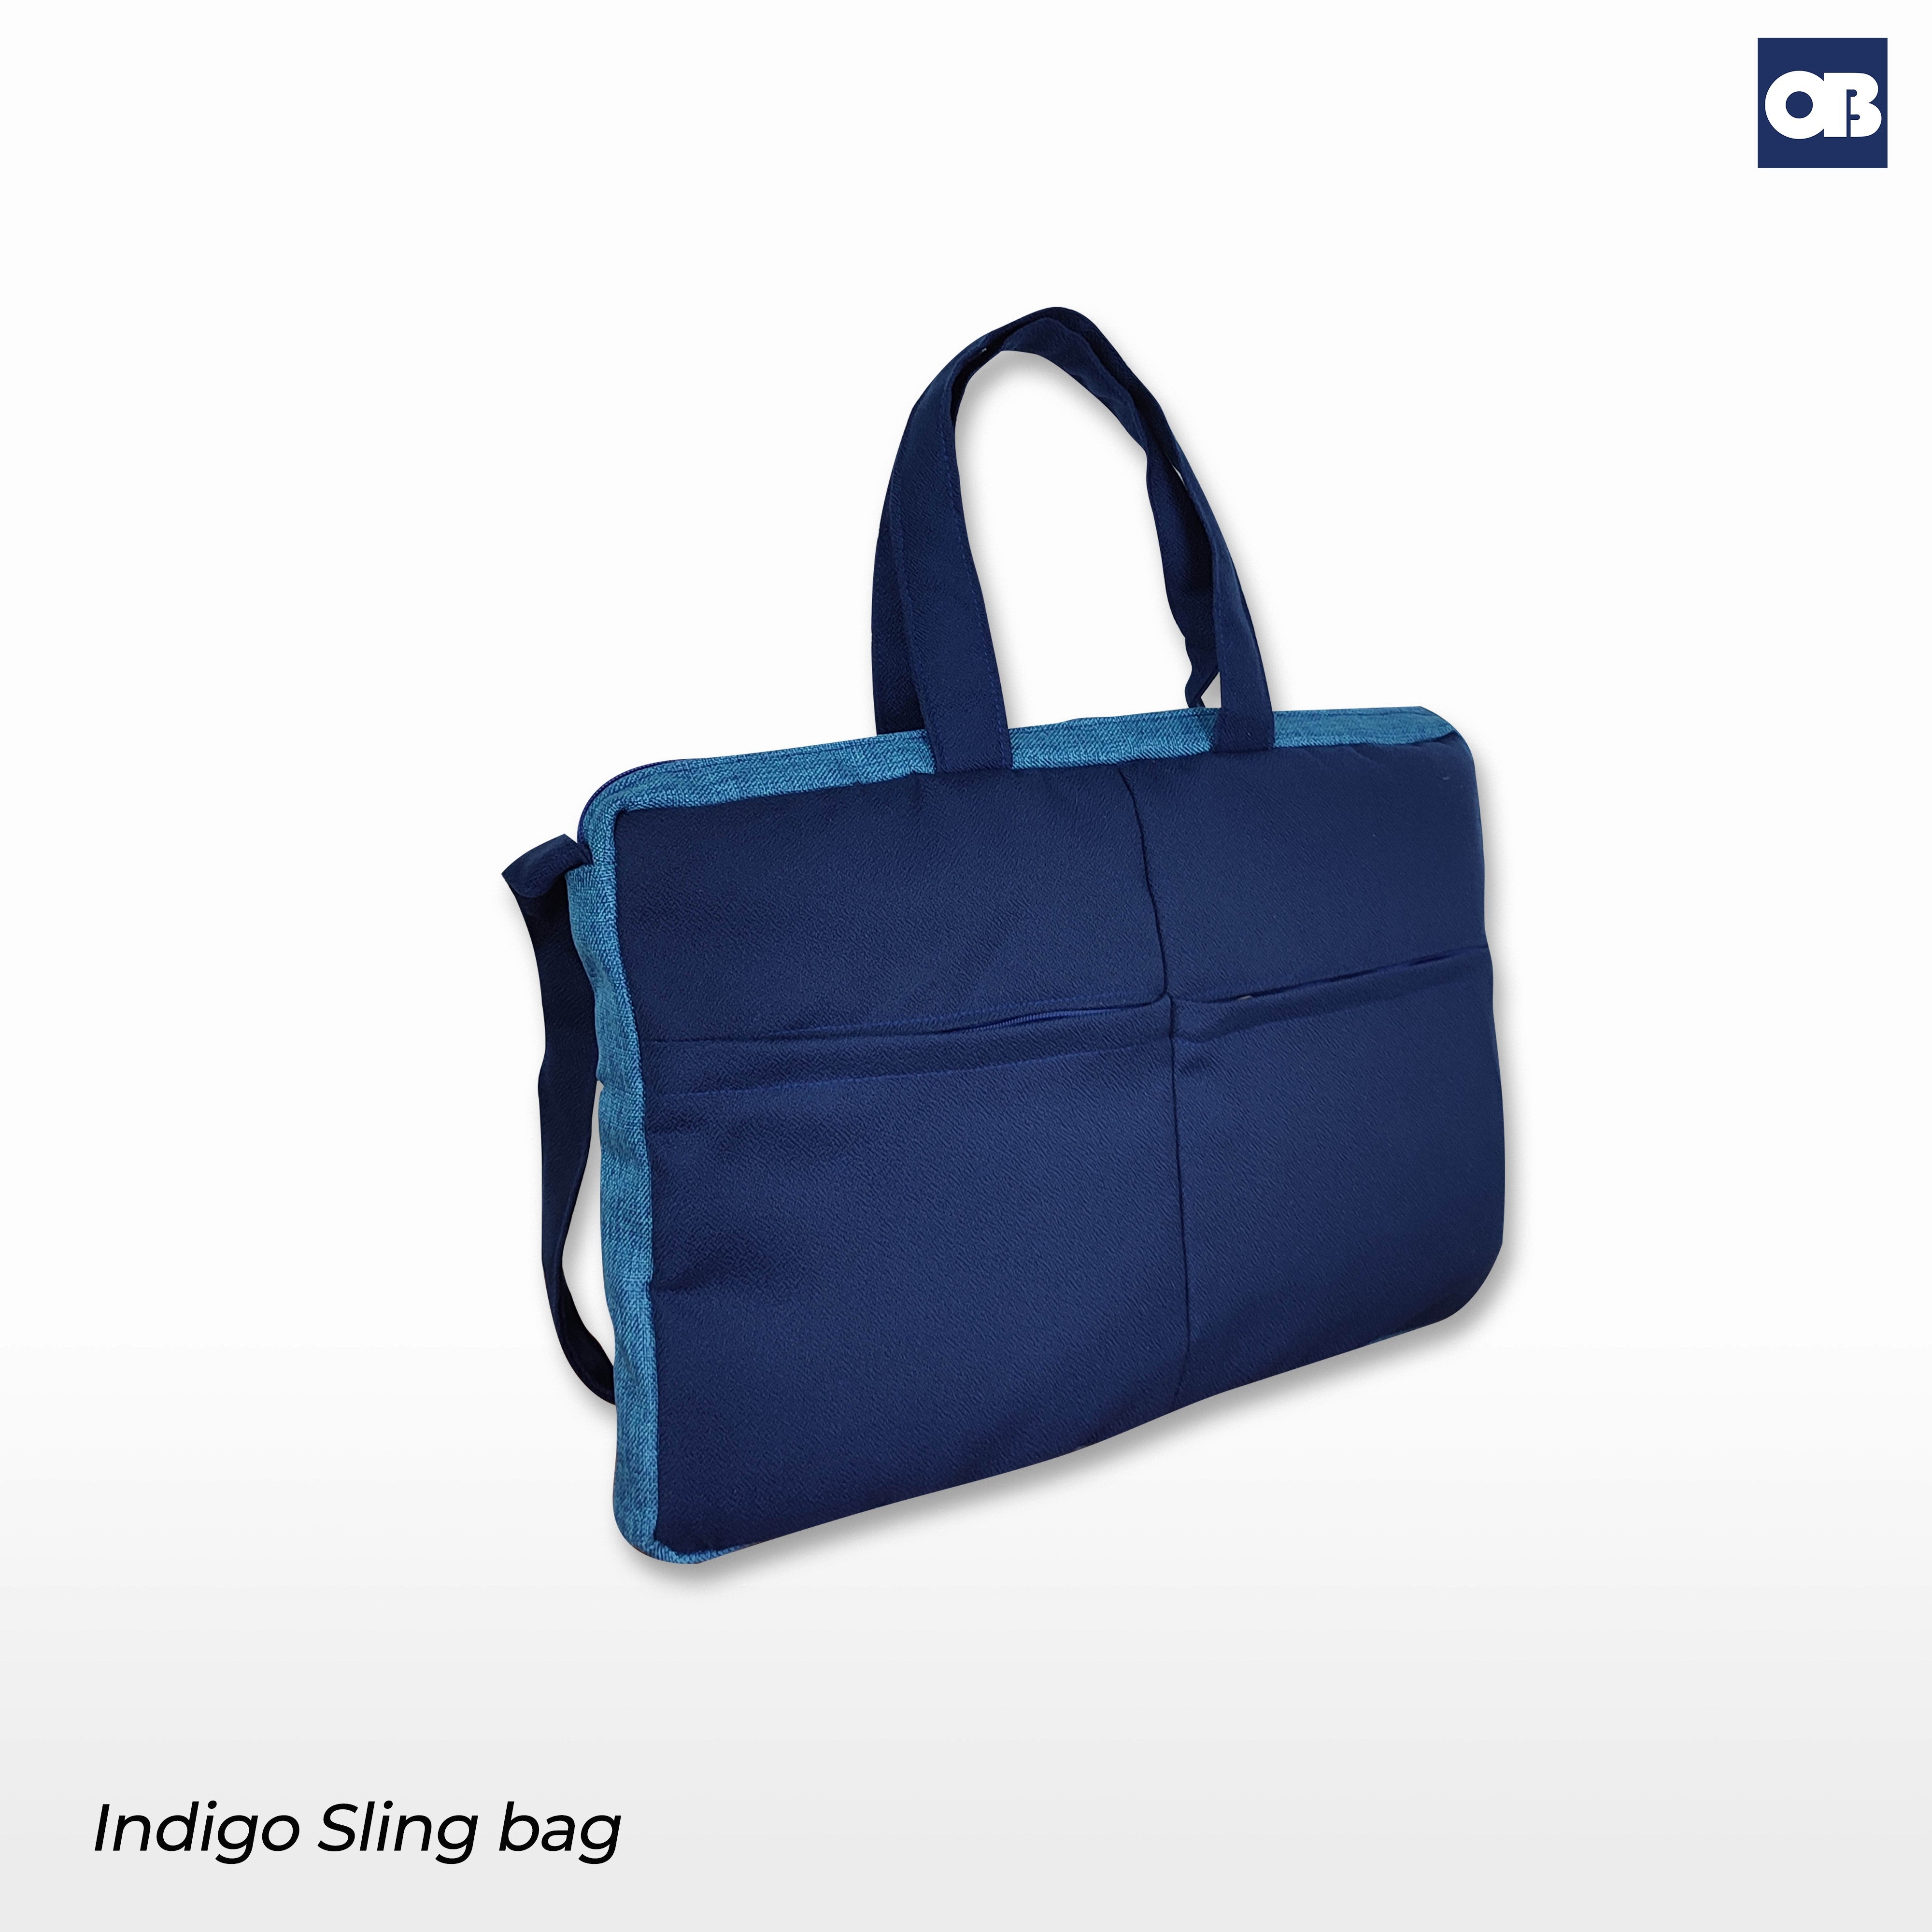 OB Indigo Sling Bag